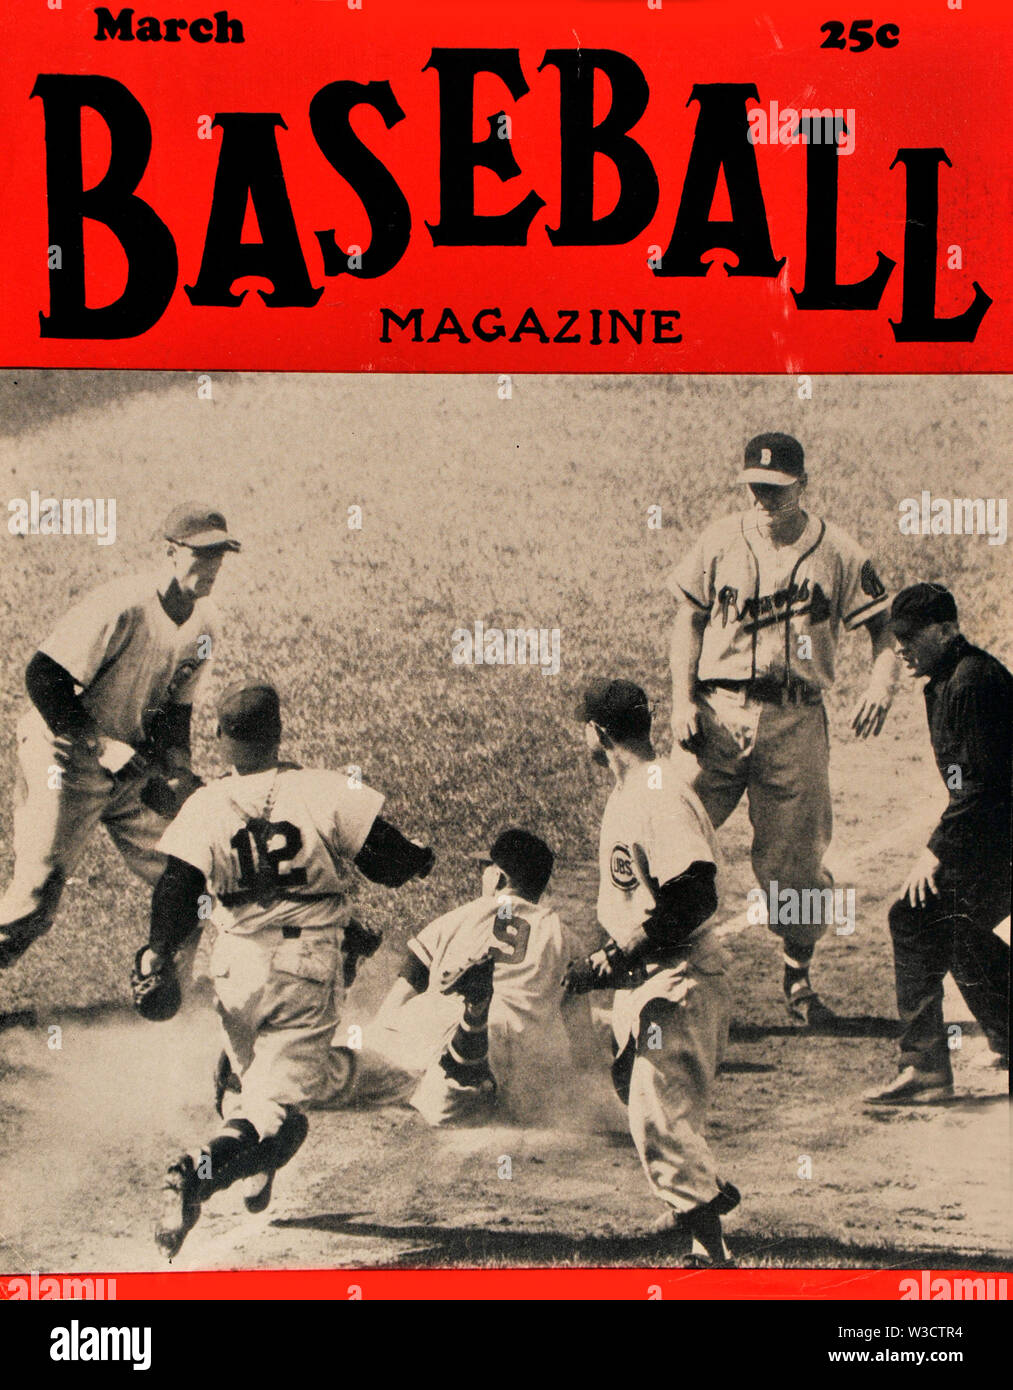 La portada de la revista béisbol Vintage circa 1940 Fotografía de stock -  Alamy